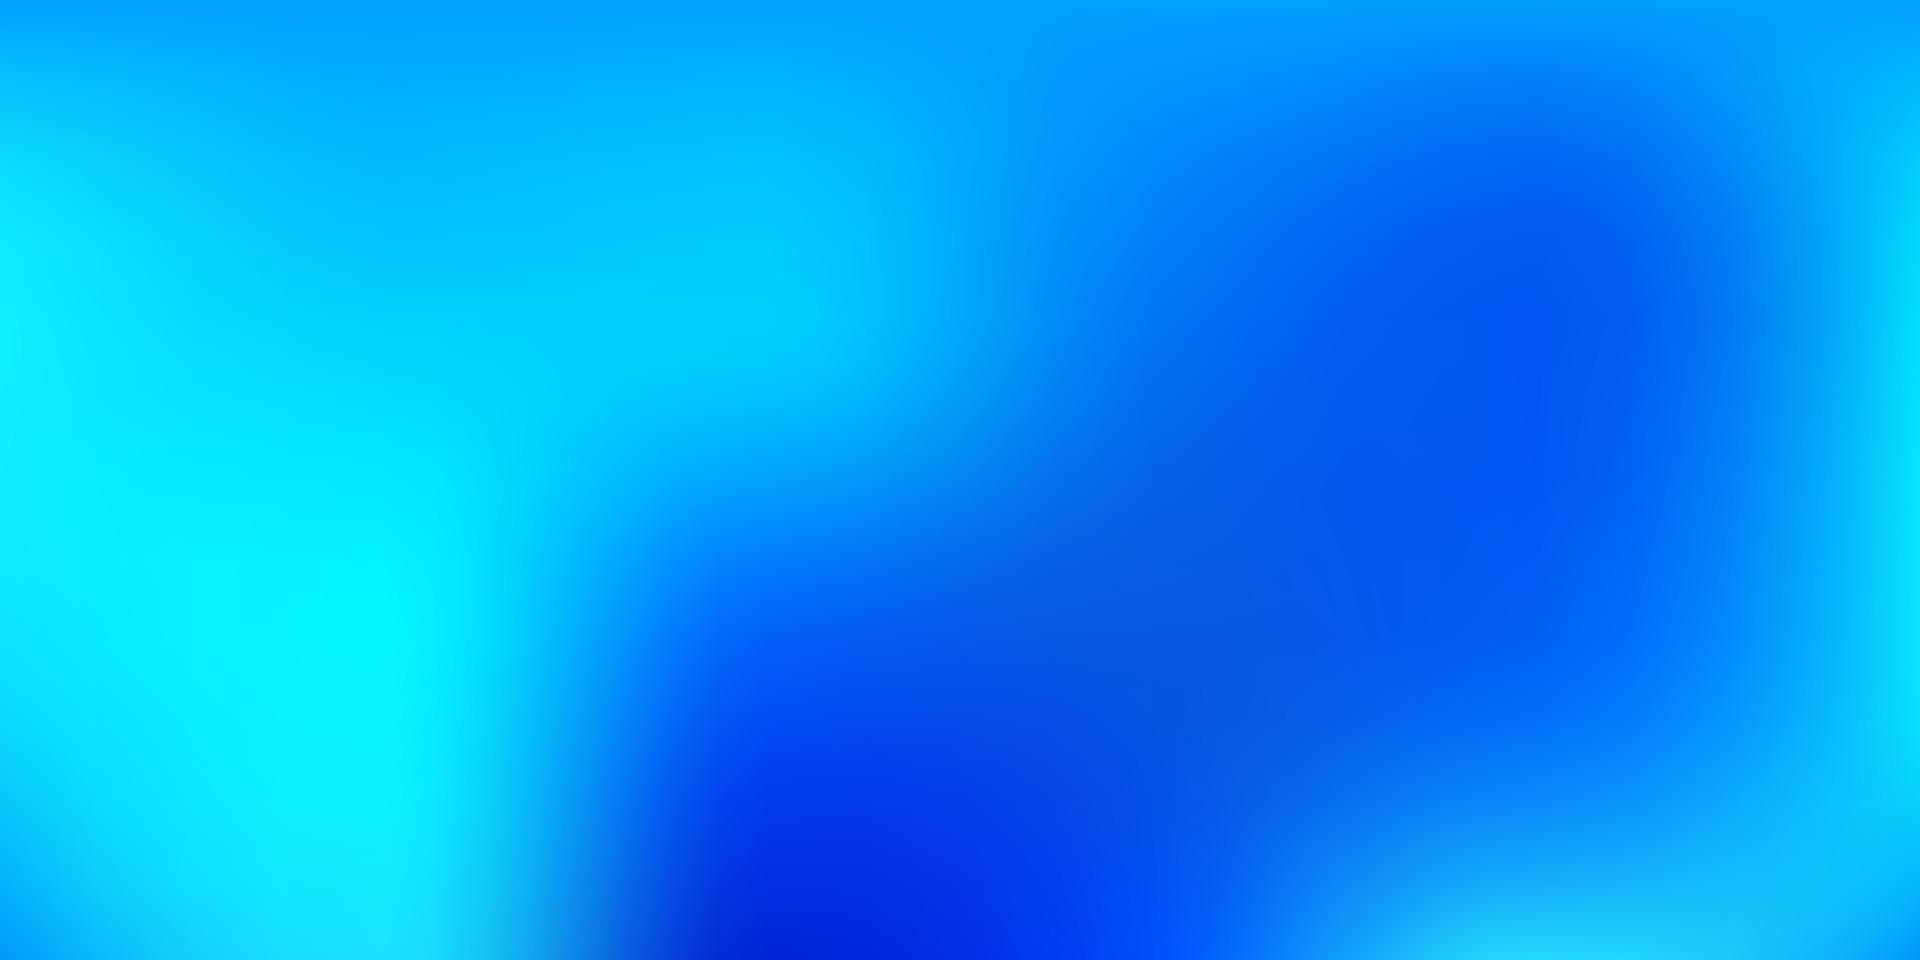 gradiente de vector azul oscuro fondo borroso